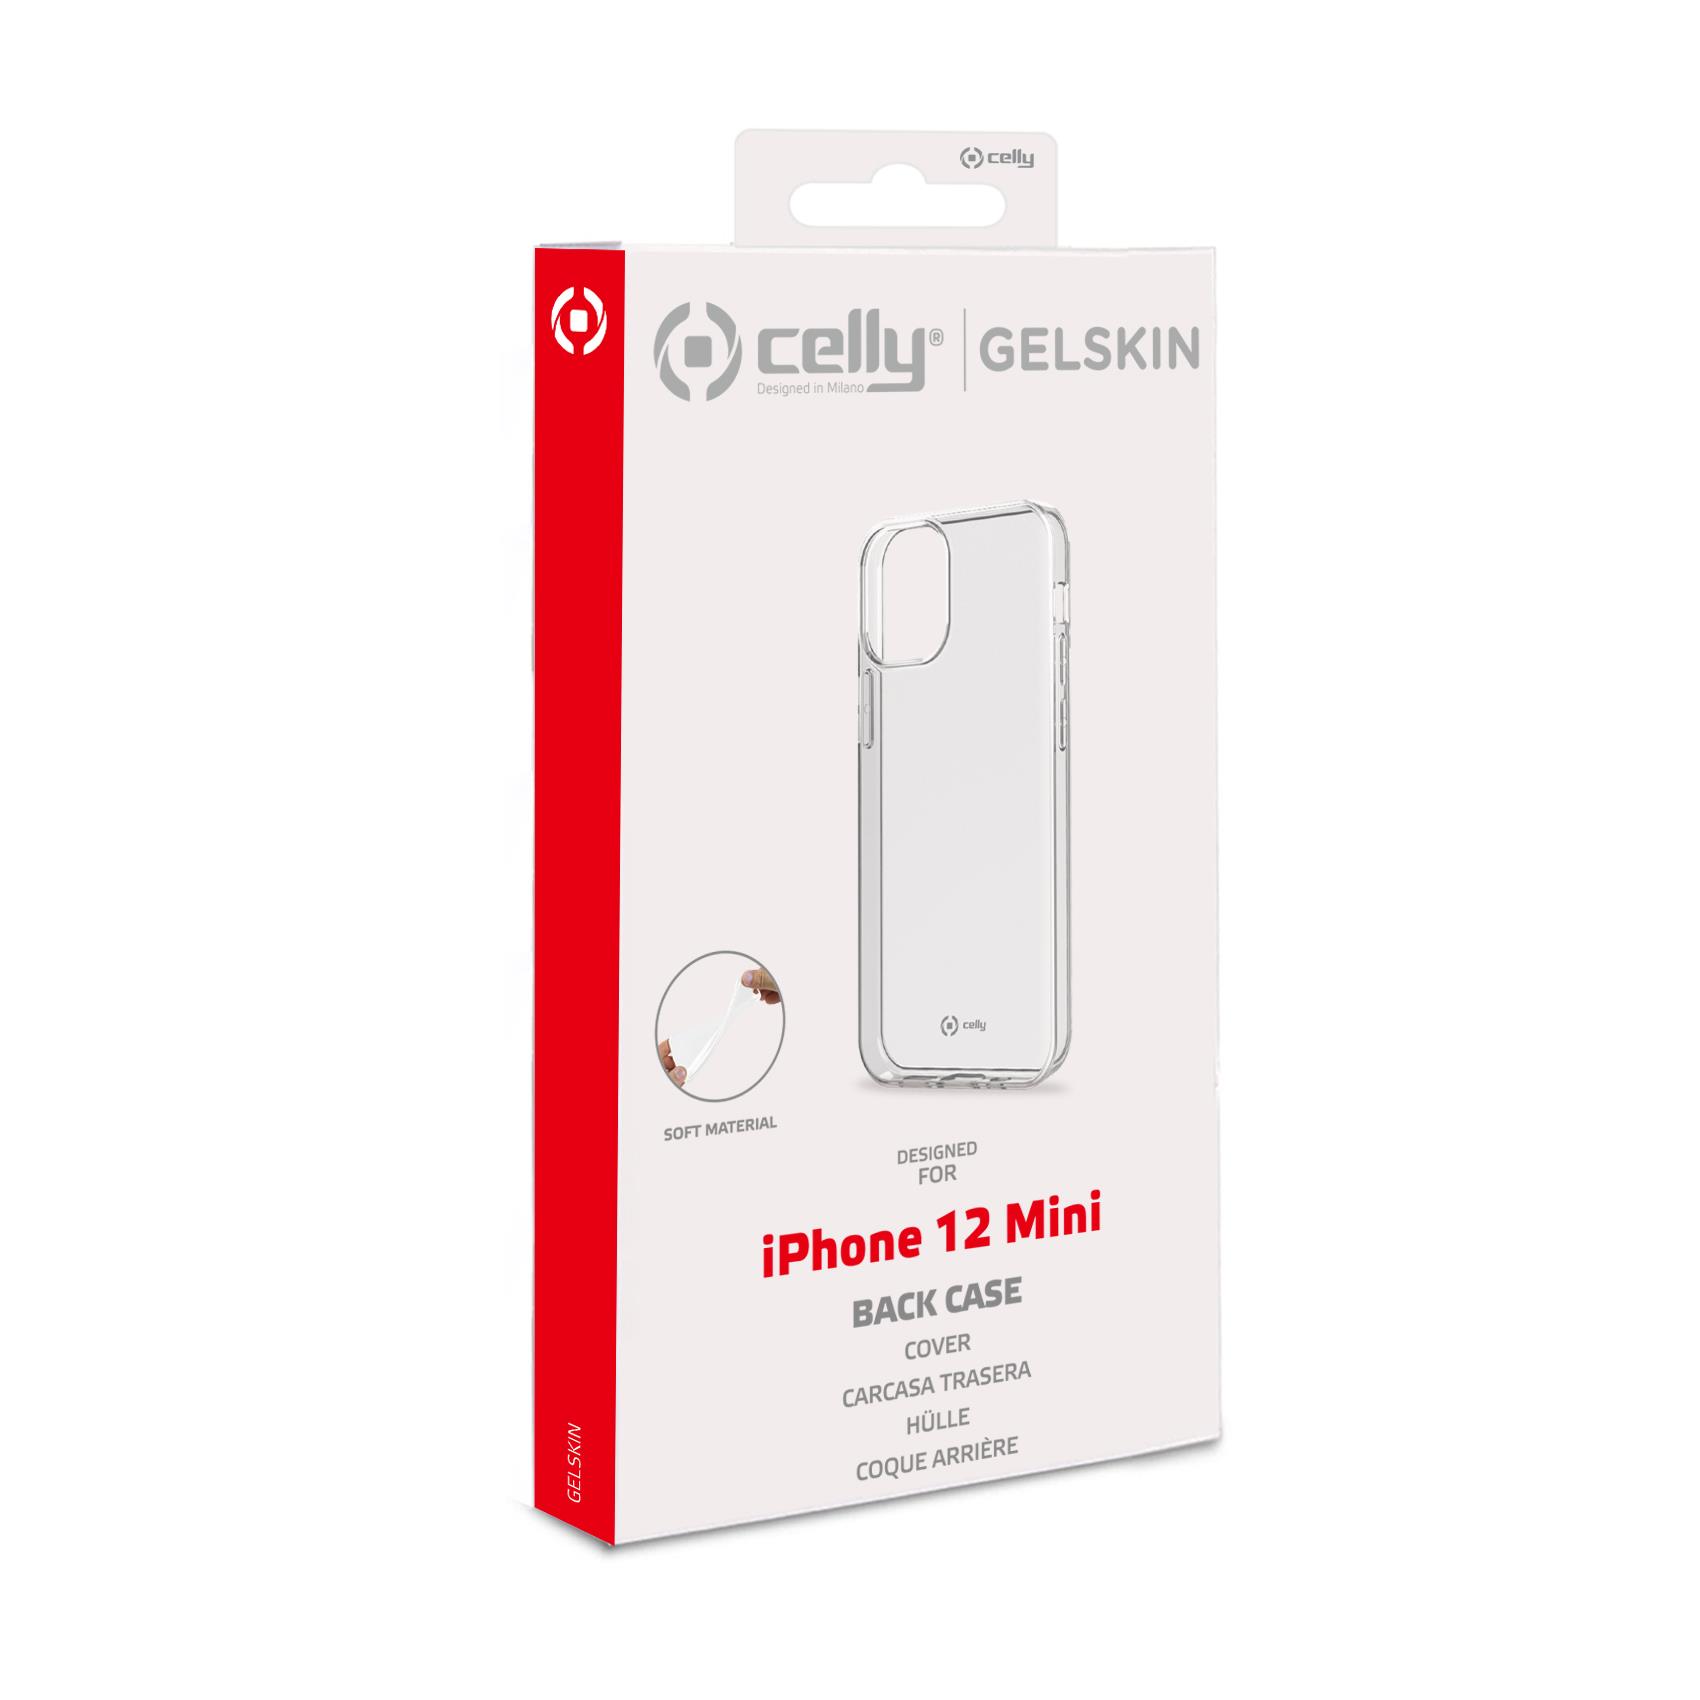 Tpu Cover Iphone 12 Mini Celly Gelskin1003 8021735761129